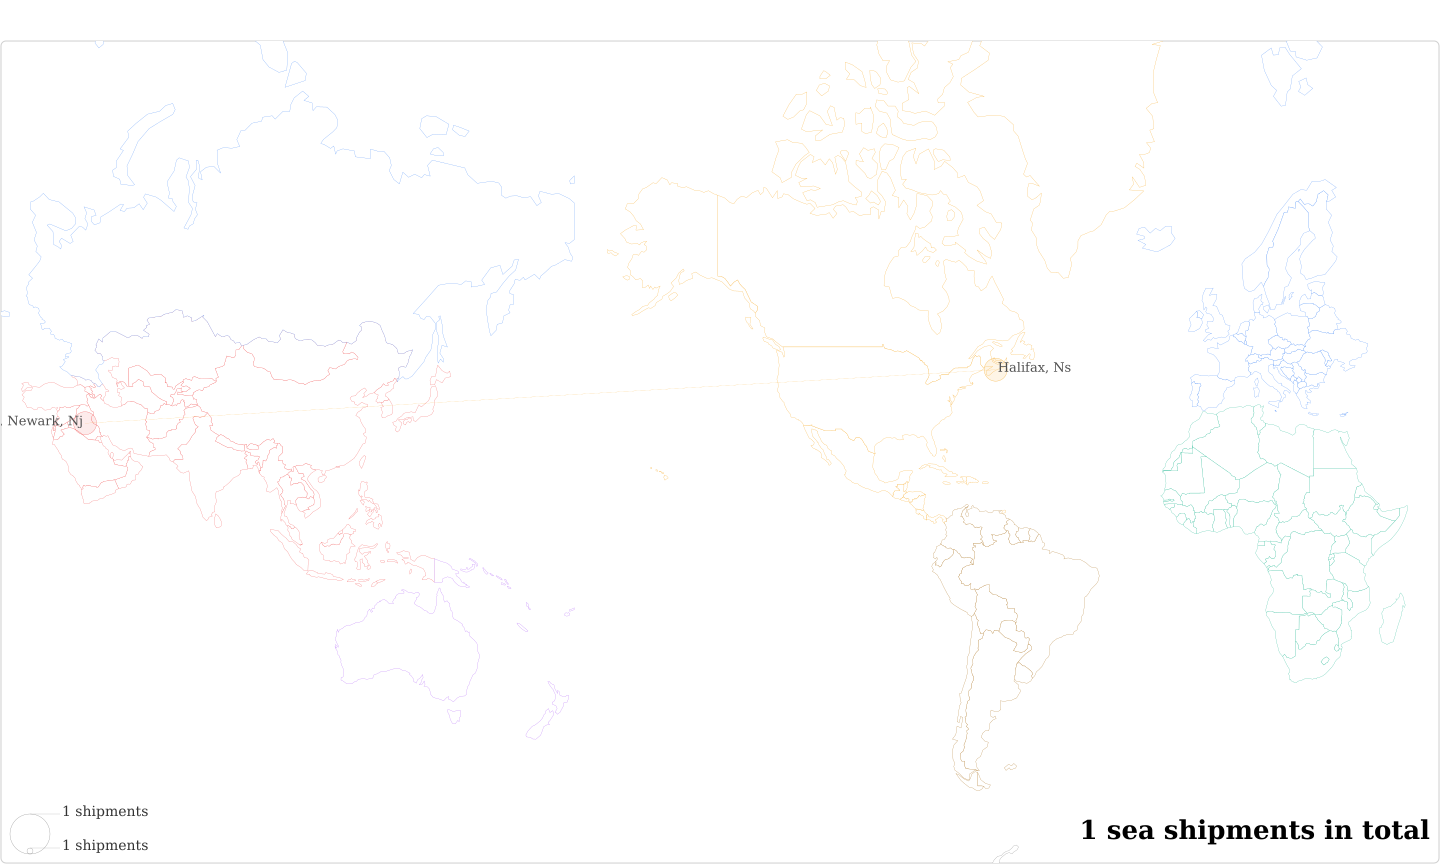 Al Wijdan's Imports Per Country Map